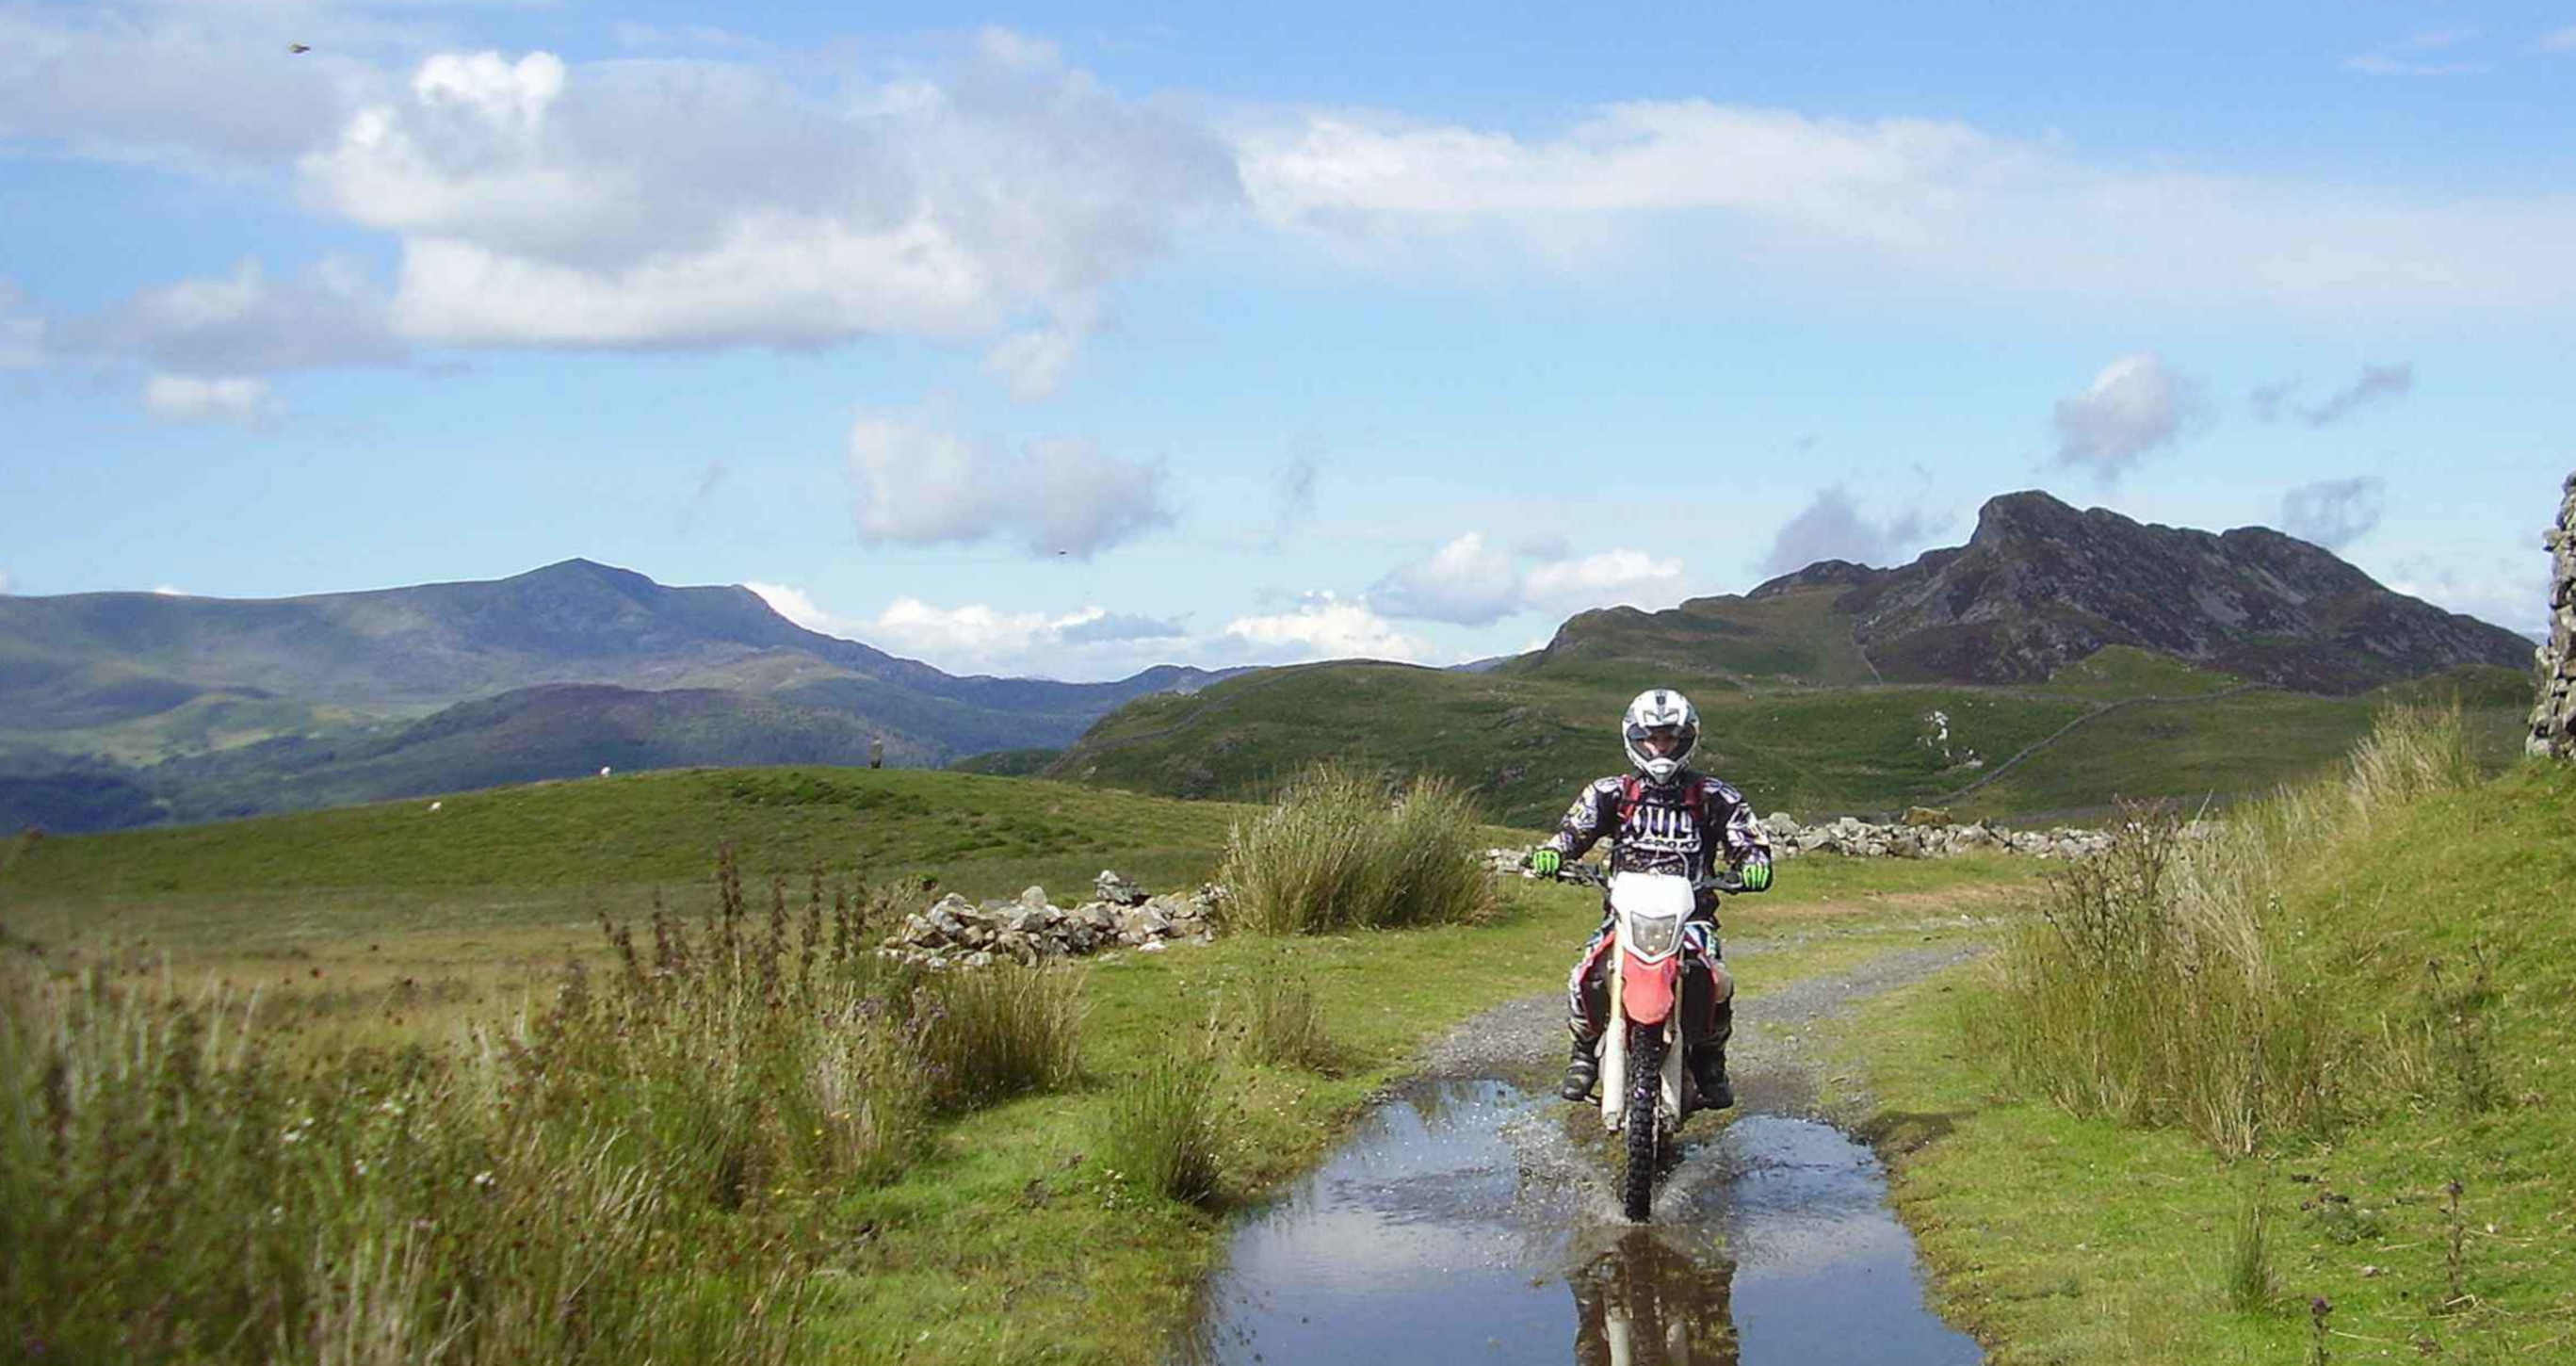 Scenic picture of trail rider in Snowdonia